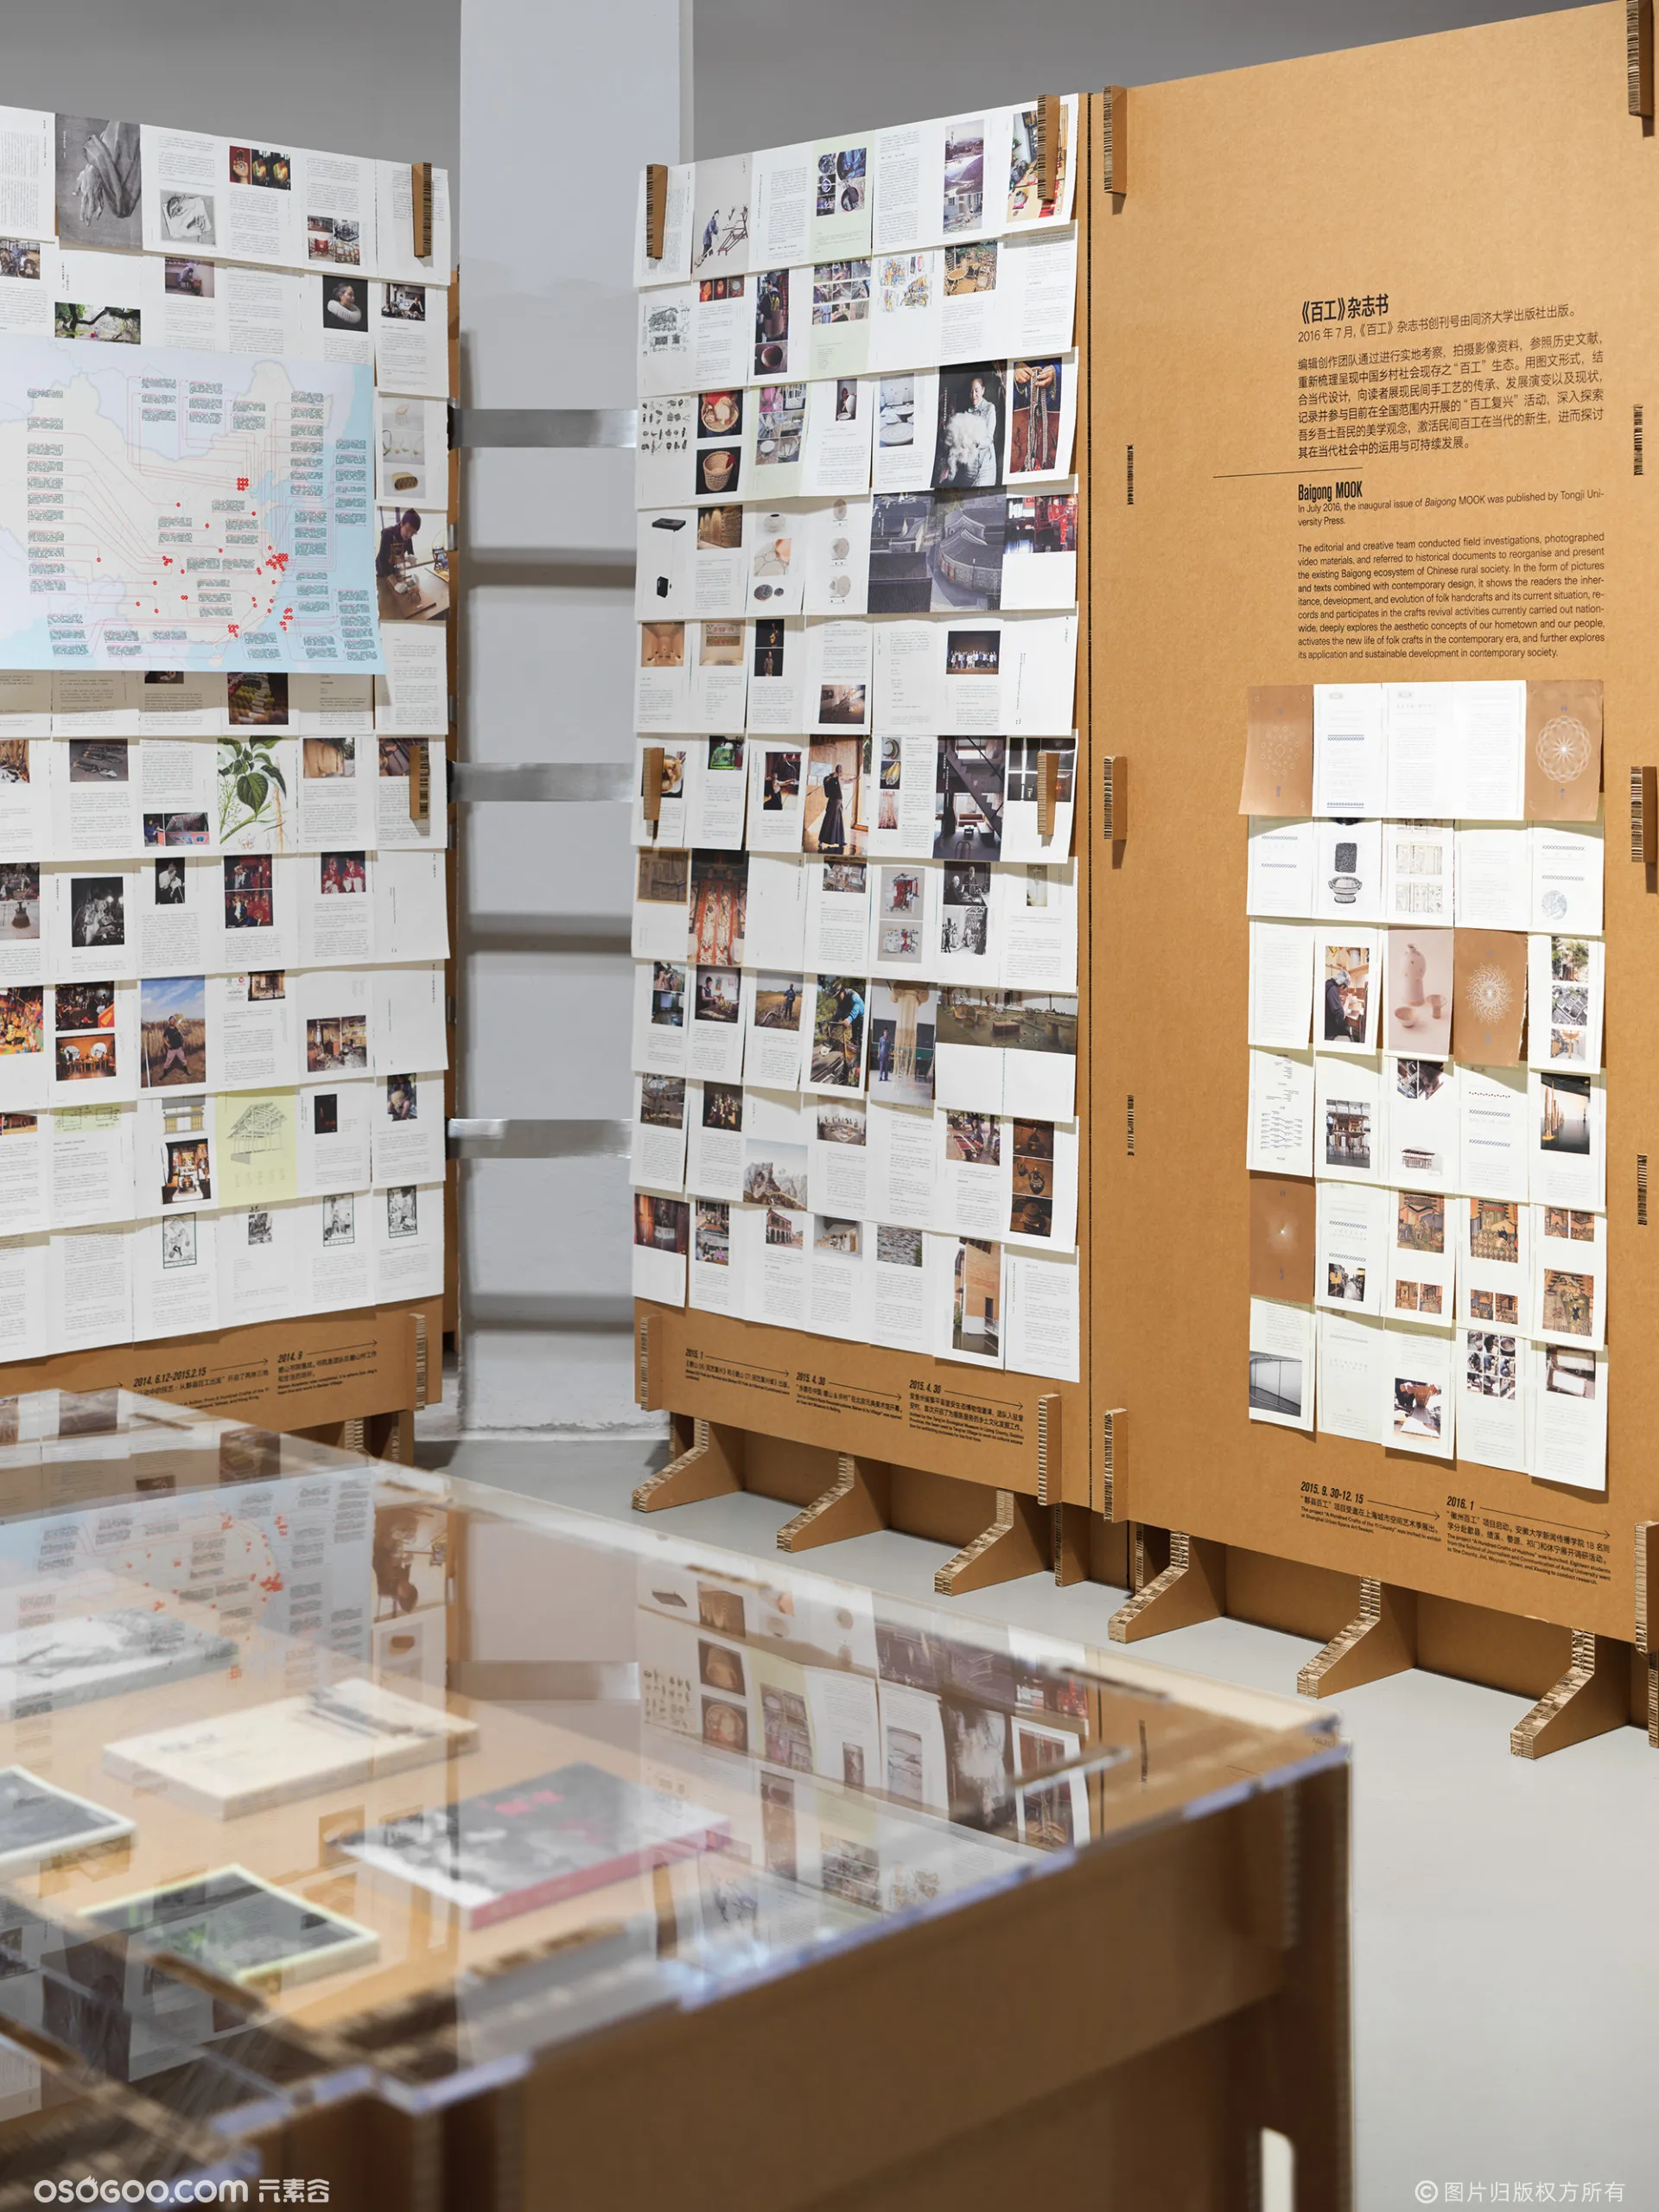 硬纸板会成为可持续展览设计的明星吗？